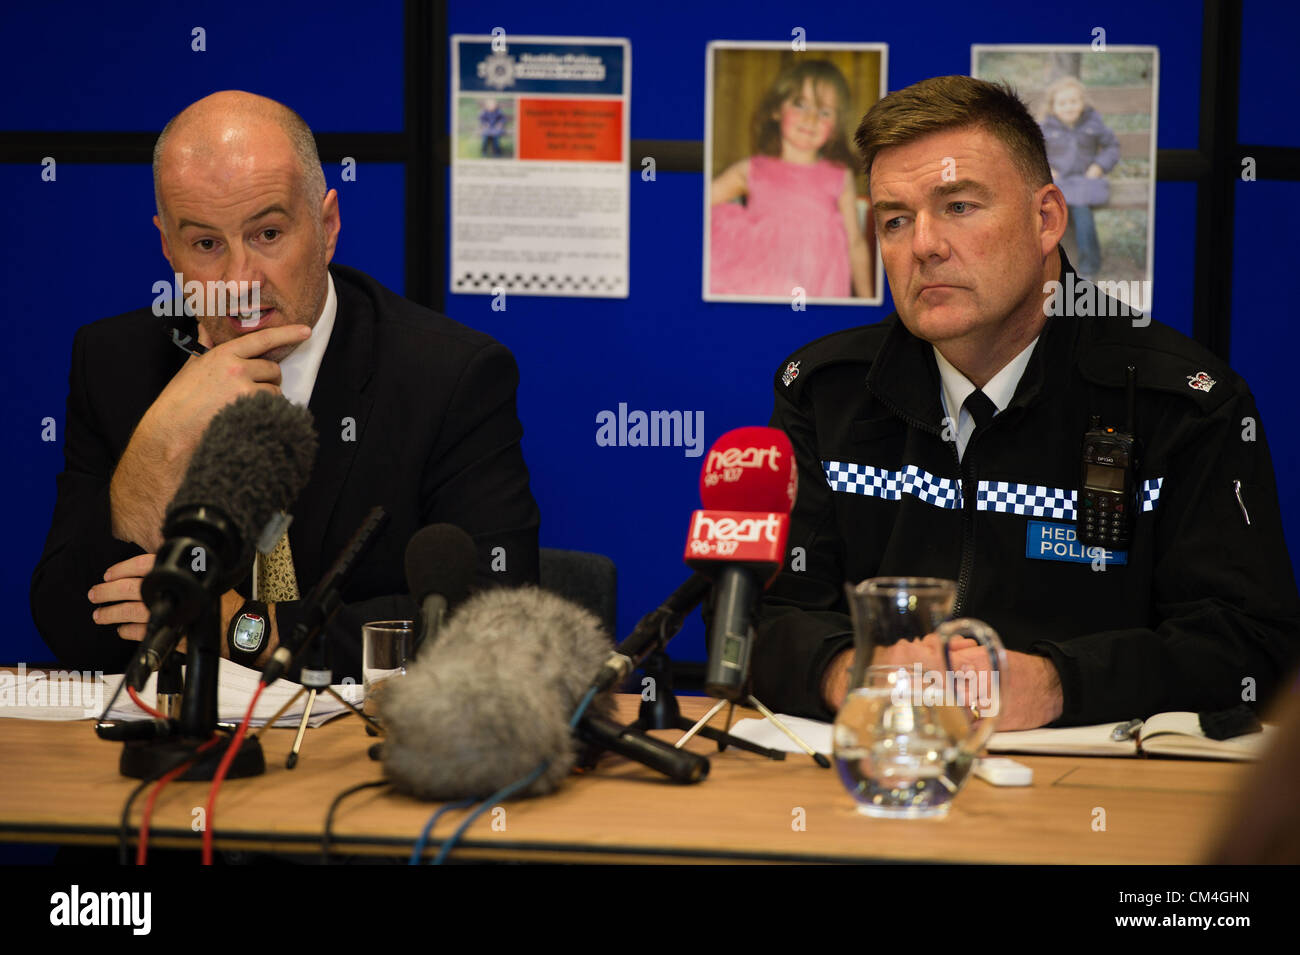 2 Oct 2012, Aberystwyth UK : Detective Superintendant REG BEVAN (gauche, adaptées) et Superintendant IAN JOHN (à droite) en uniforme, lors d'une conférence de presse La mise à jour des informations sur les recherches pour retrouver 5 ans, fille d'AVRIL JONES. Ils ont annoncé, mais n'a pas nom, qu'un homme de 46 ans avait été arrêté au sujet de l'enlèvement et était remis en question au poste de police de Aberystwyth cette nuit. L'homme a été nommée localement comme ex-soldat MARK BRIDGER Photo ©keith morris Banque D'Images